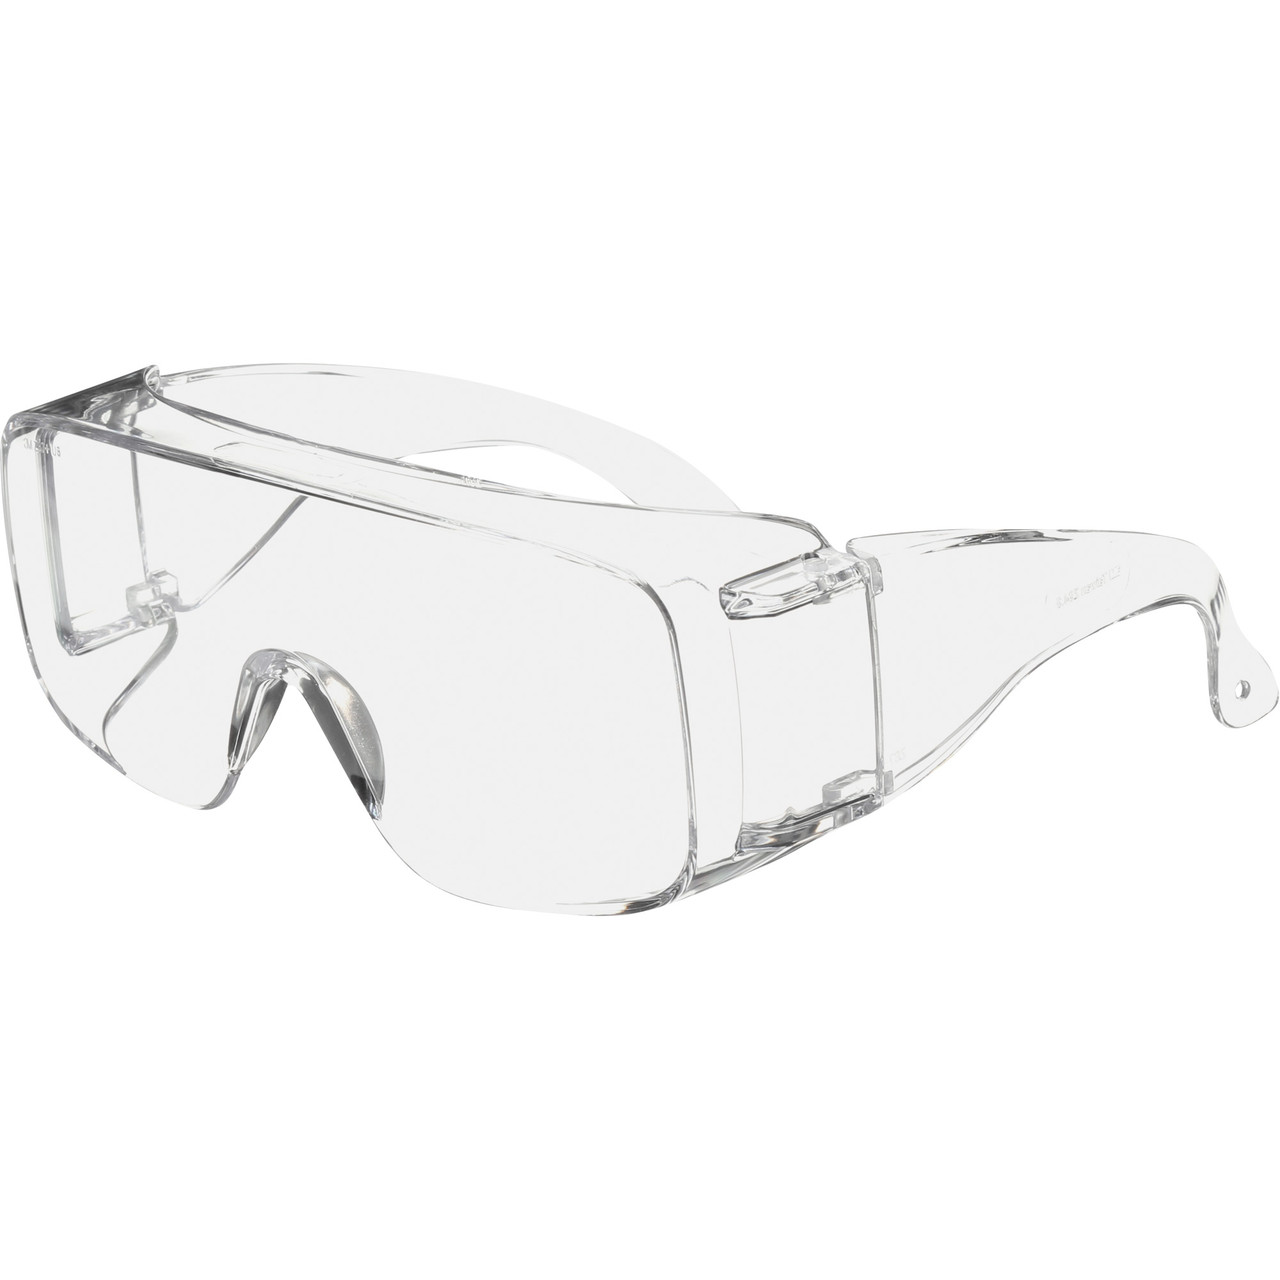 Tour Guard® V Series Safety Glasses Dispenser Pack   TGV01-20